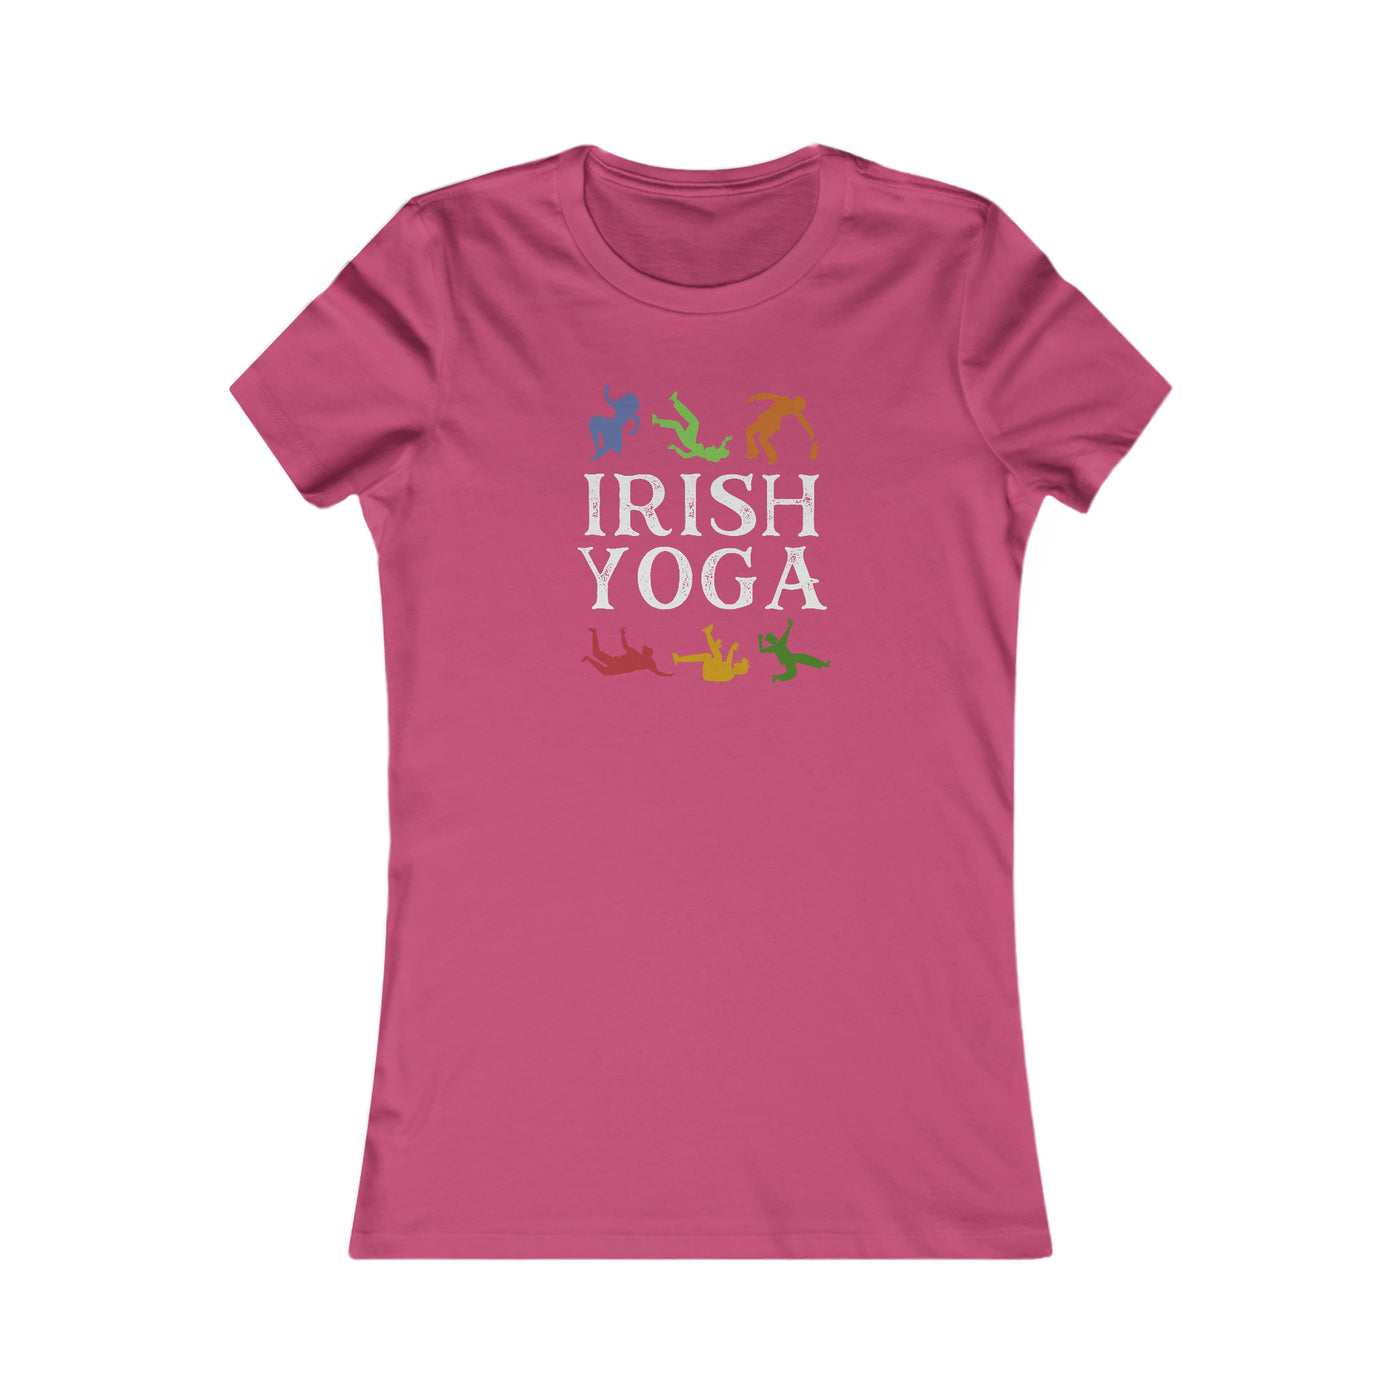 Irish Yoga Women's Favorite Tee